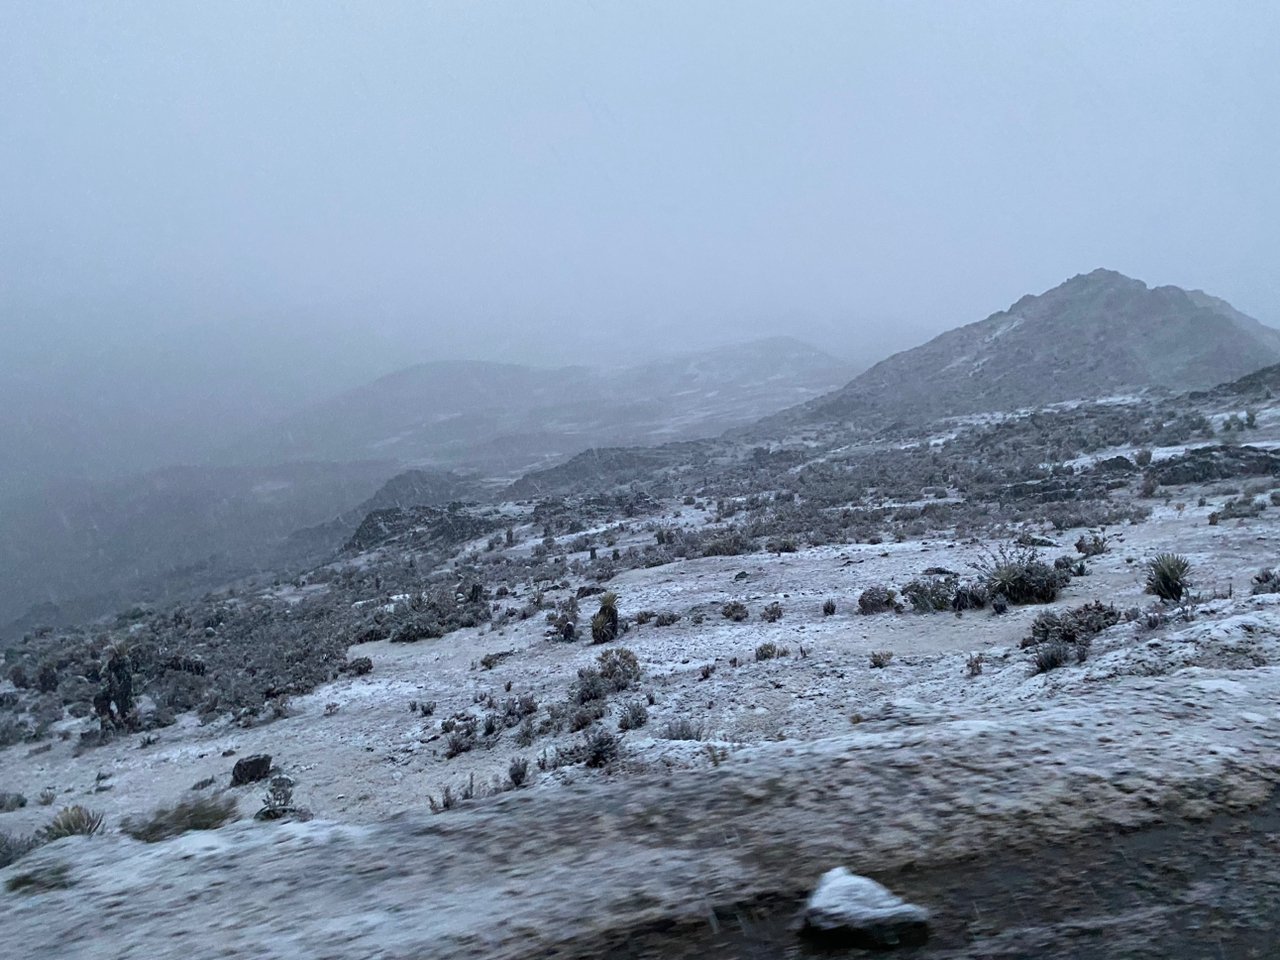 Nevada vistió de blanco al Pico El Águila y sorprendió a los merideños (Imágenes)